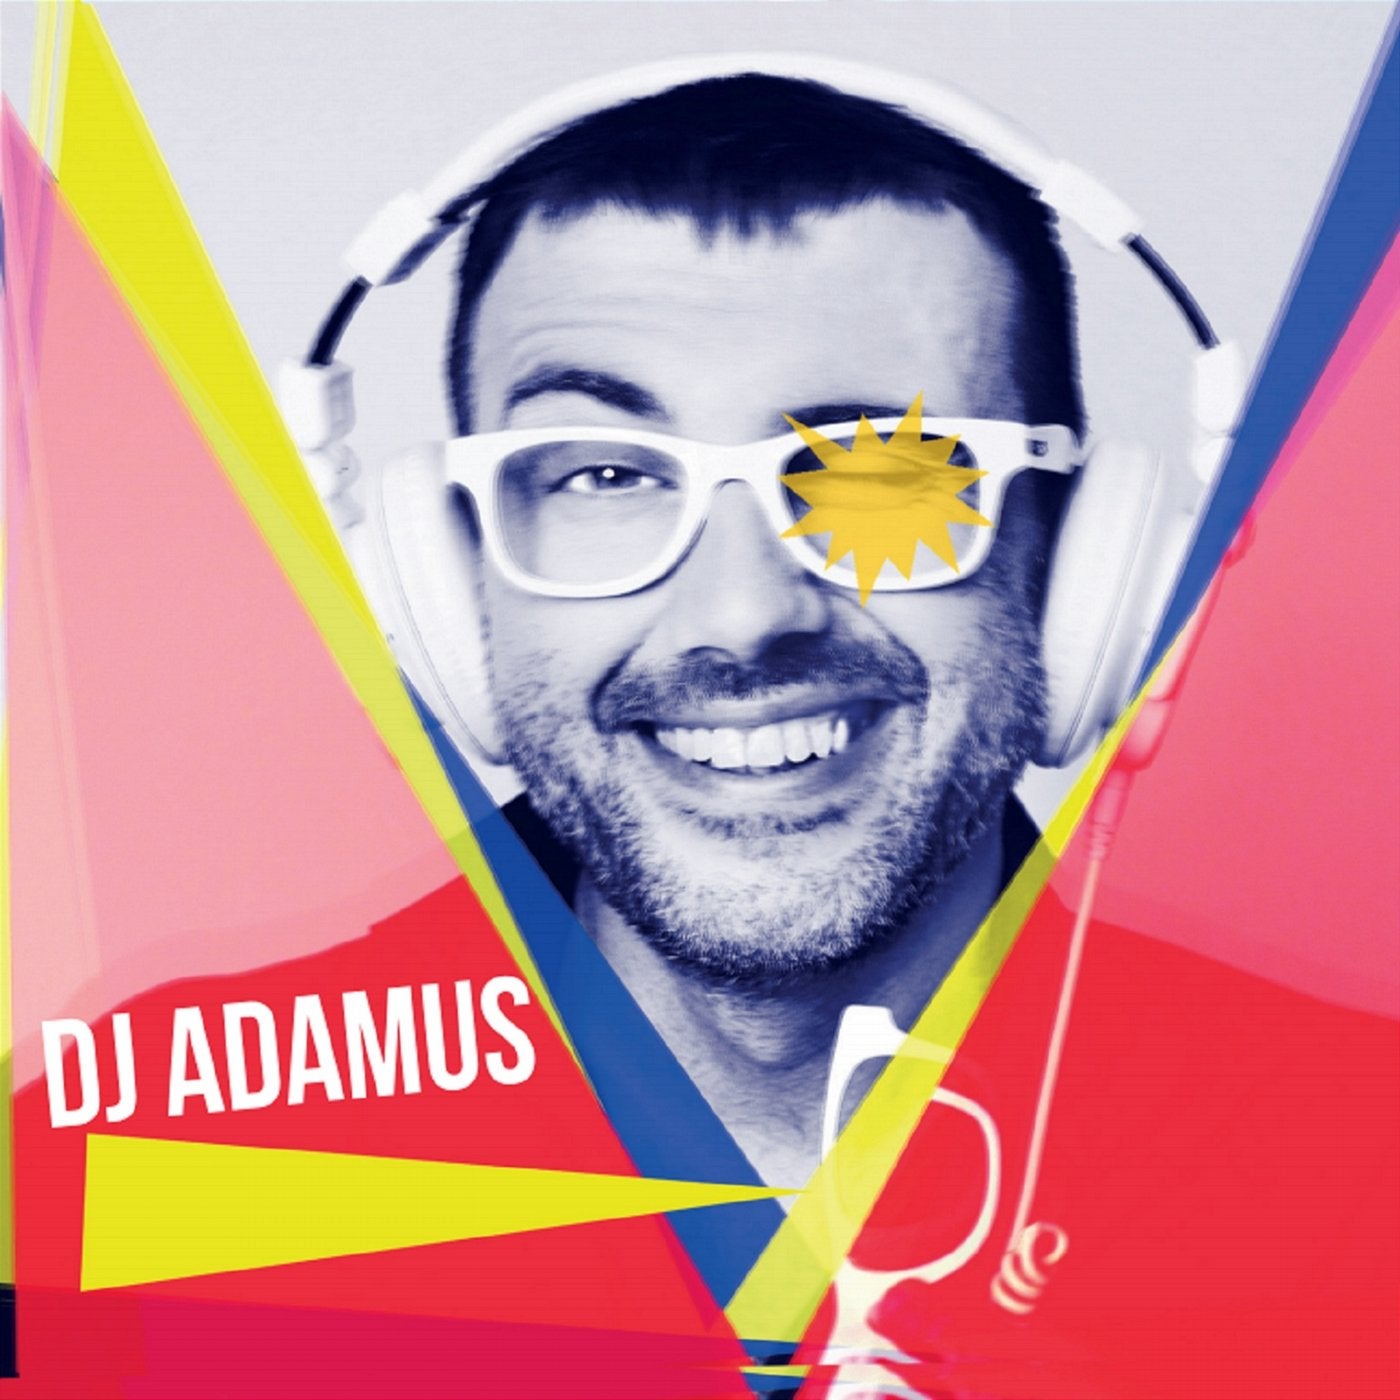 DJ Adamus 2015